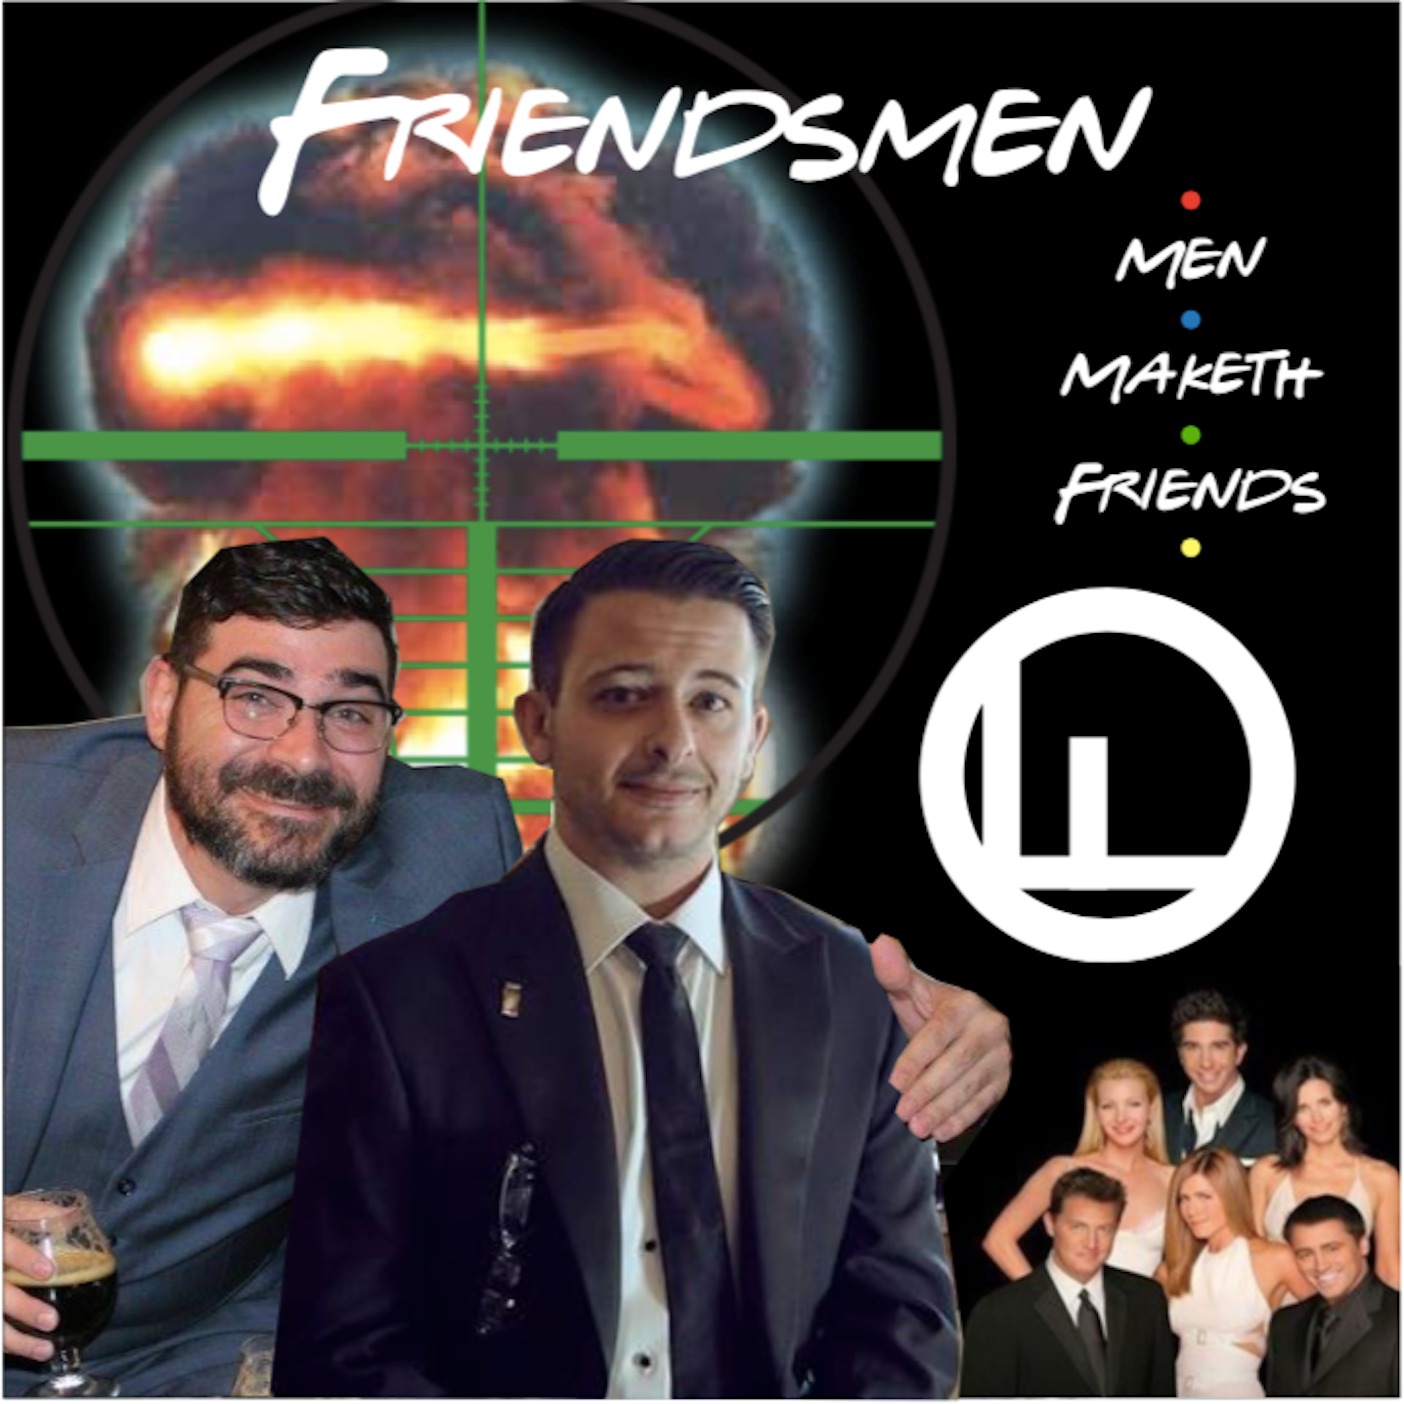 Friendsmen